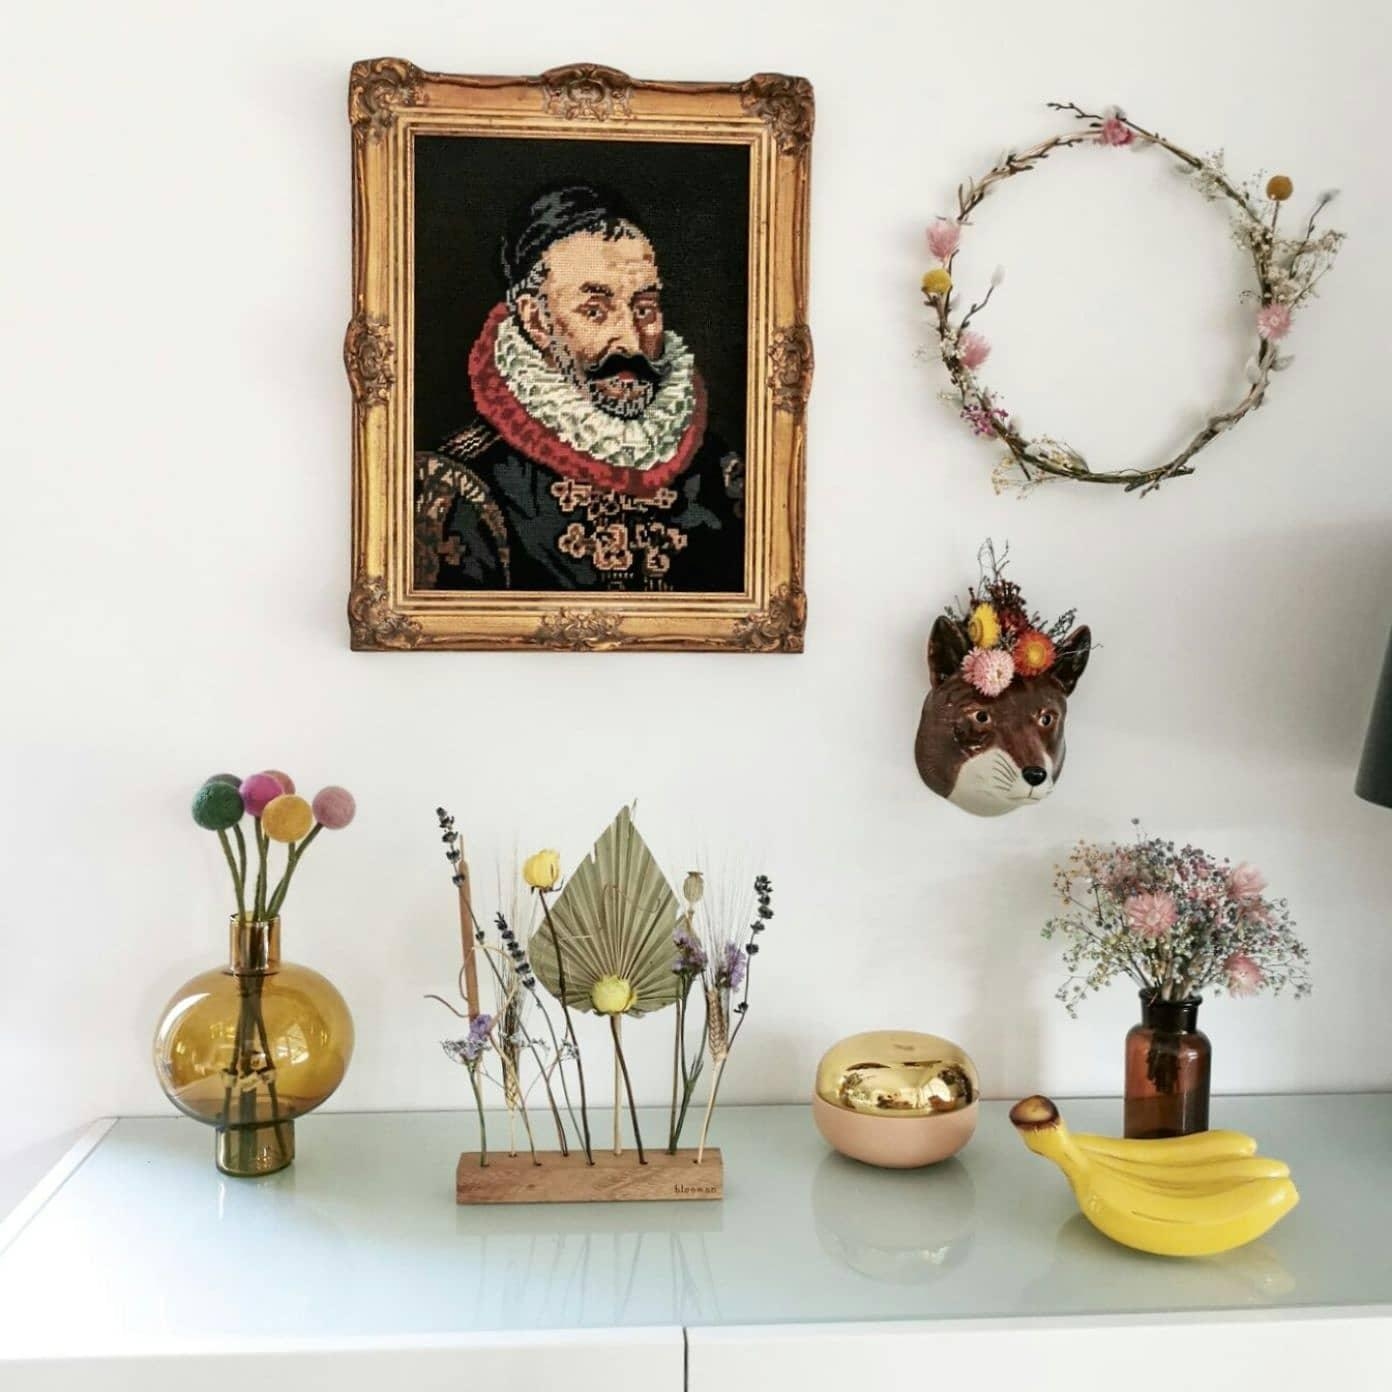 Neu bestückt 💕 #trockenblumen #sideboard #wohnzimmer #esstisch #deko #blumenkranz #vase #sommerdeko #blumendisplay 